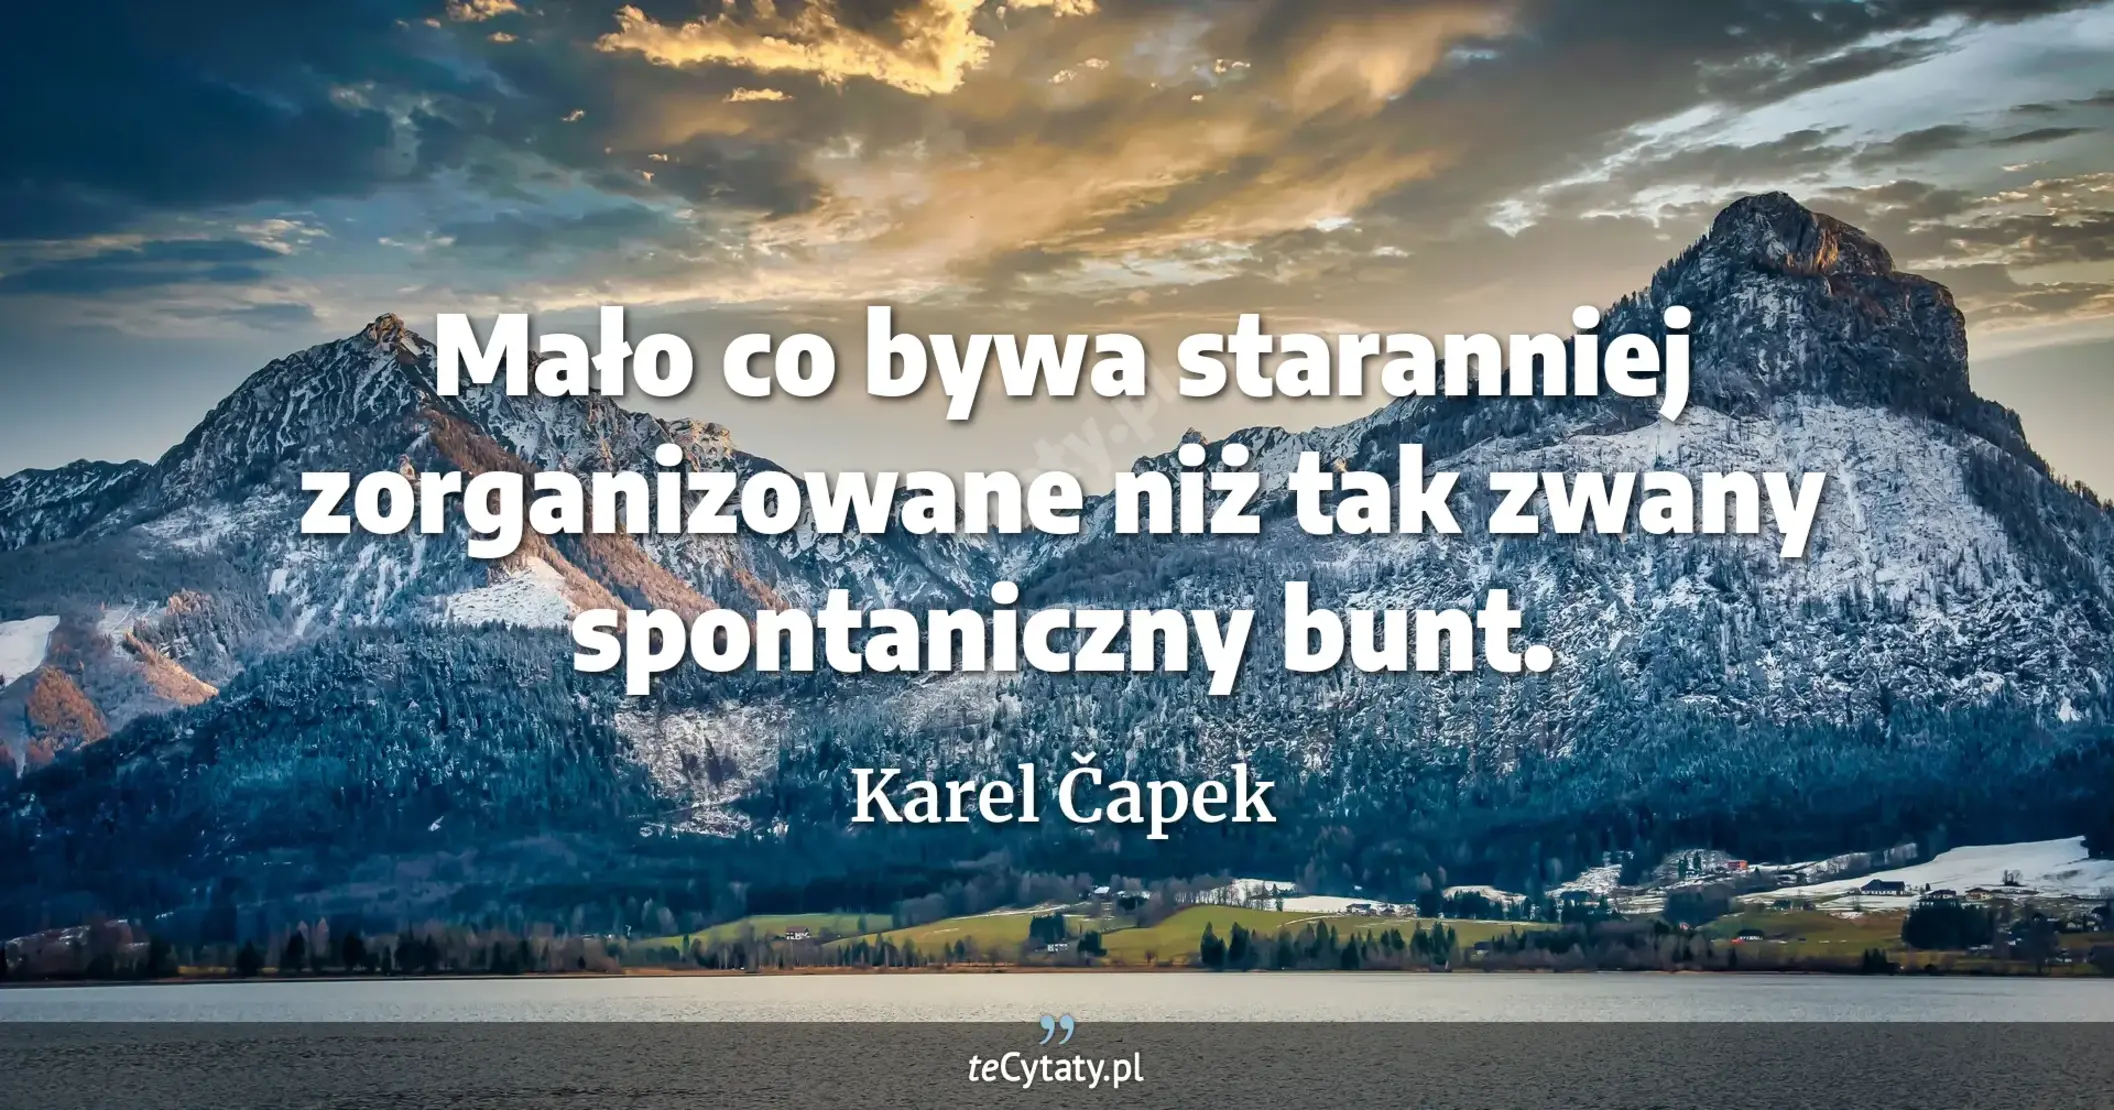 Mało co bywa staranniej zorganizowane niż tak zwany spontaniczny bunt. - Karel Čapek